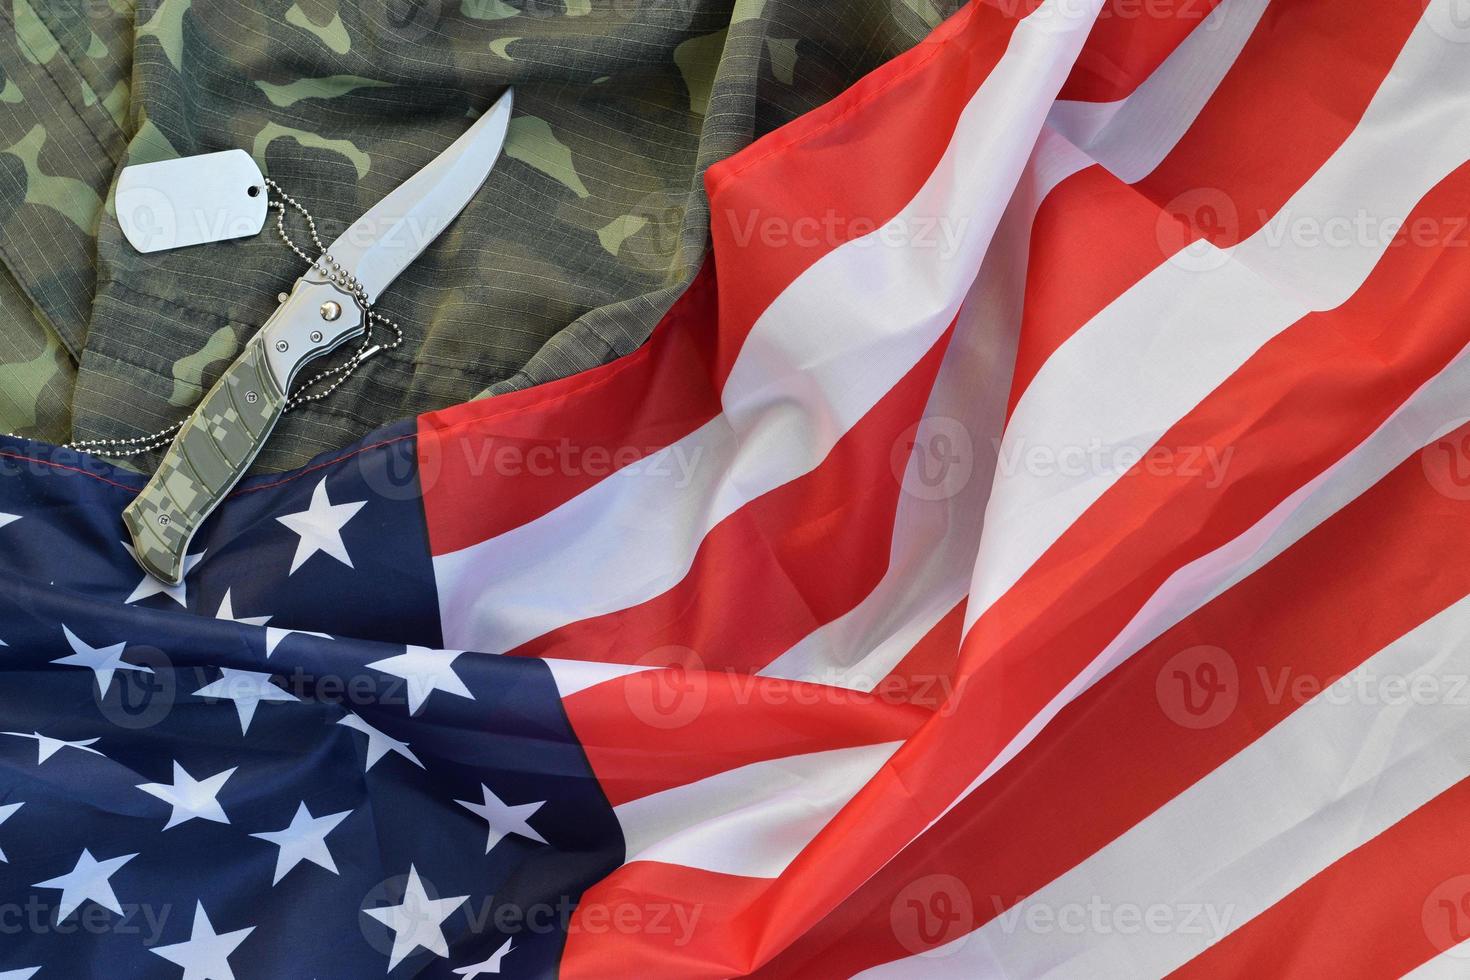 armén hund märka tecken och kniv lögner på gammal kamouflage enhetlig och vikta förenad stater flagga foto